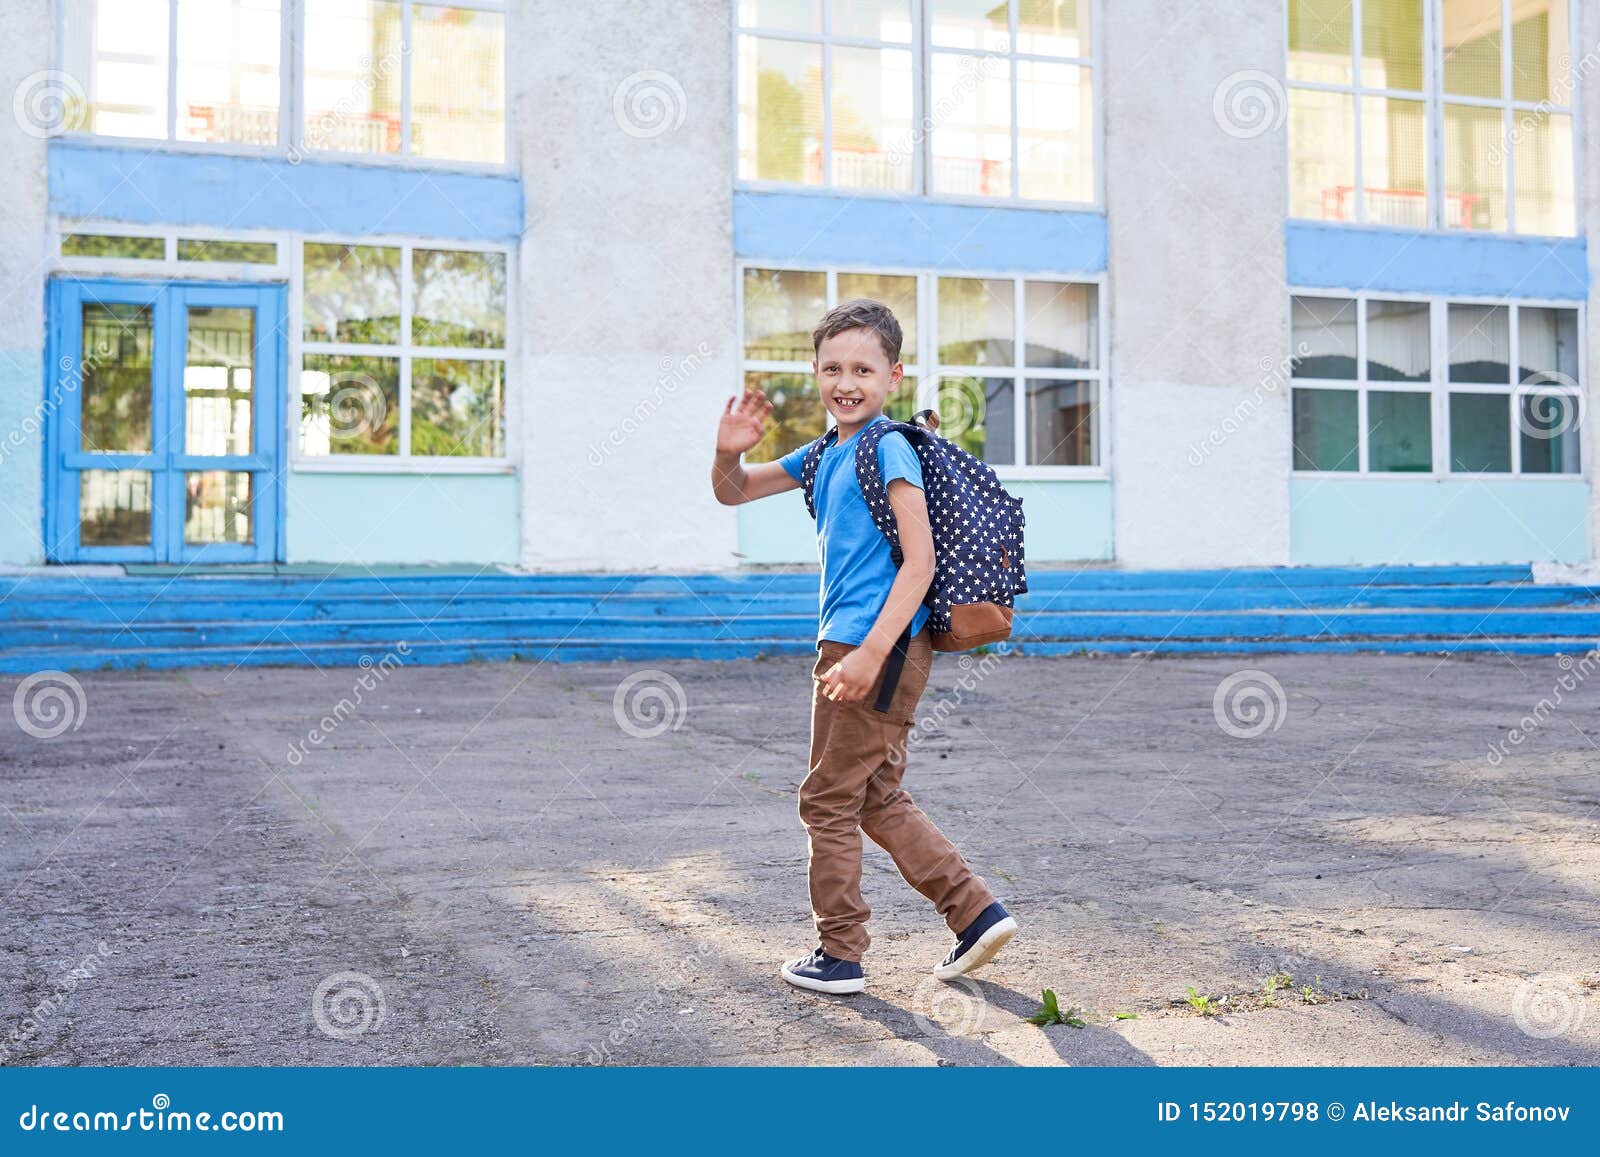 Мальчик приходит утром в школу. Мальчик идет в школу. Мальчик который ходит в школу. Школьники идут в школу. Мальчишка идёт в школу.